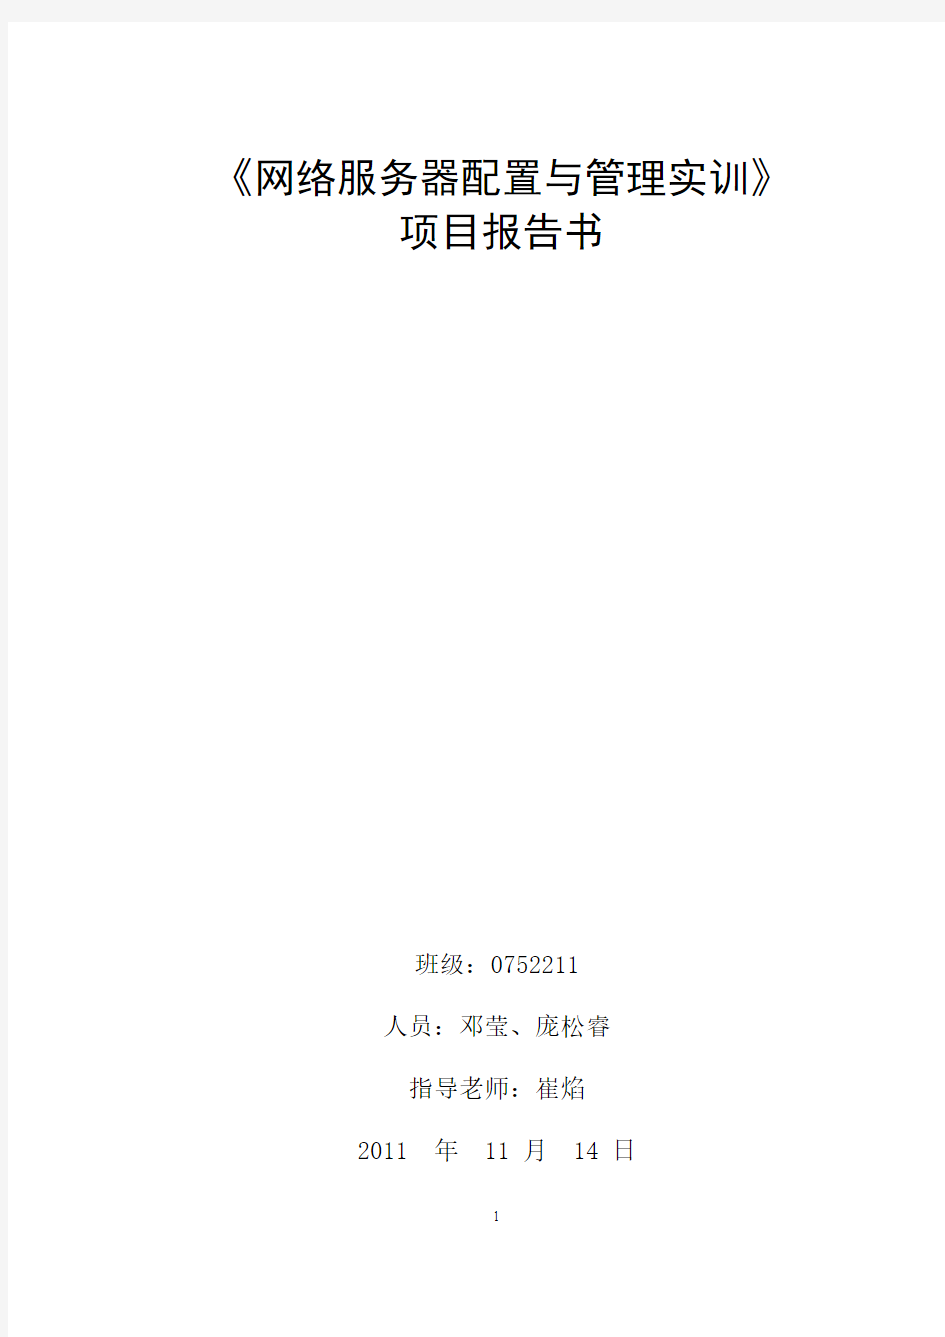 邓莹-0752211-《网络服务器配置与管理实训》实训项目报告书